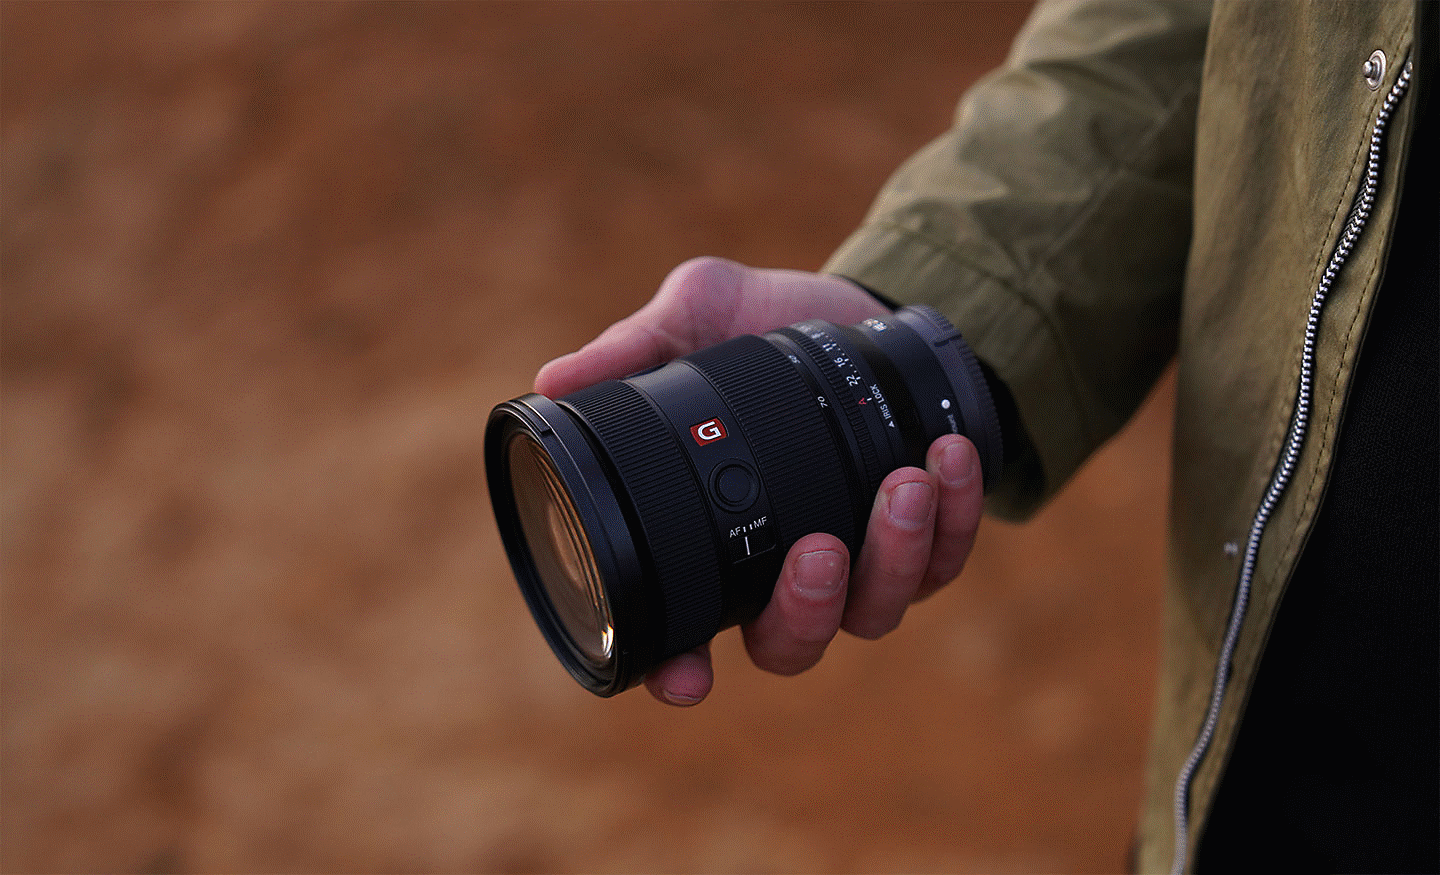 Slika objektiva SEL2470GM2 u desnoj ruci